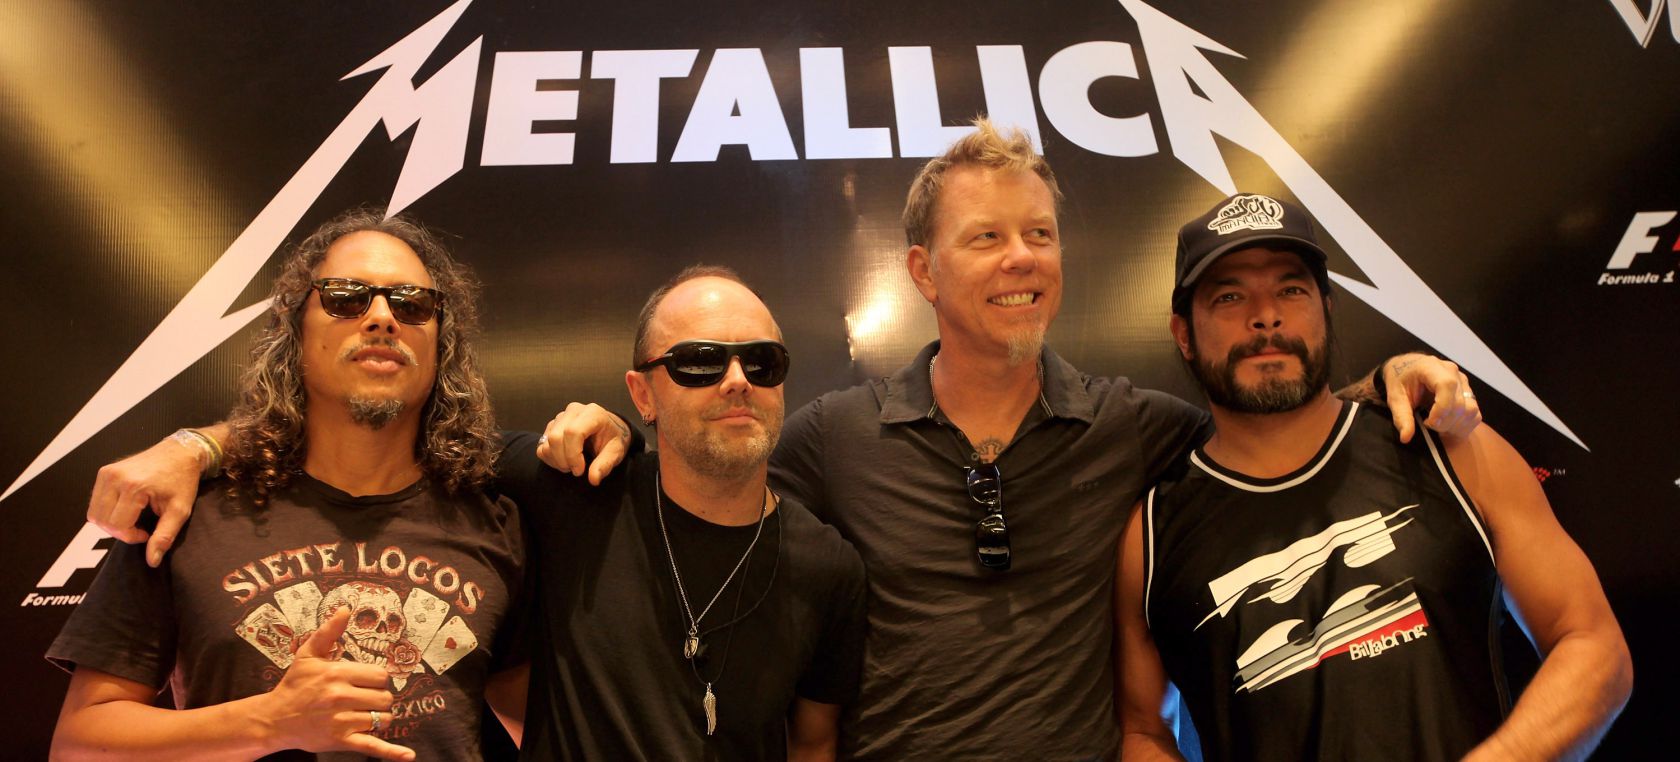 Metallica celebra los 30 años del Album' con versiones de Miley Cyrus, Juanes, J o Elton John | LOS40 Classic | LOS40